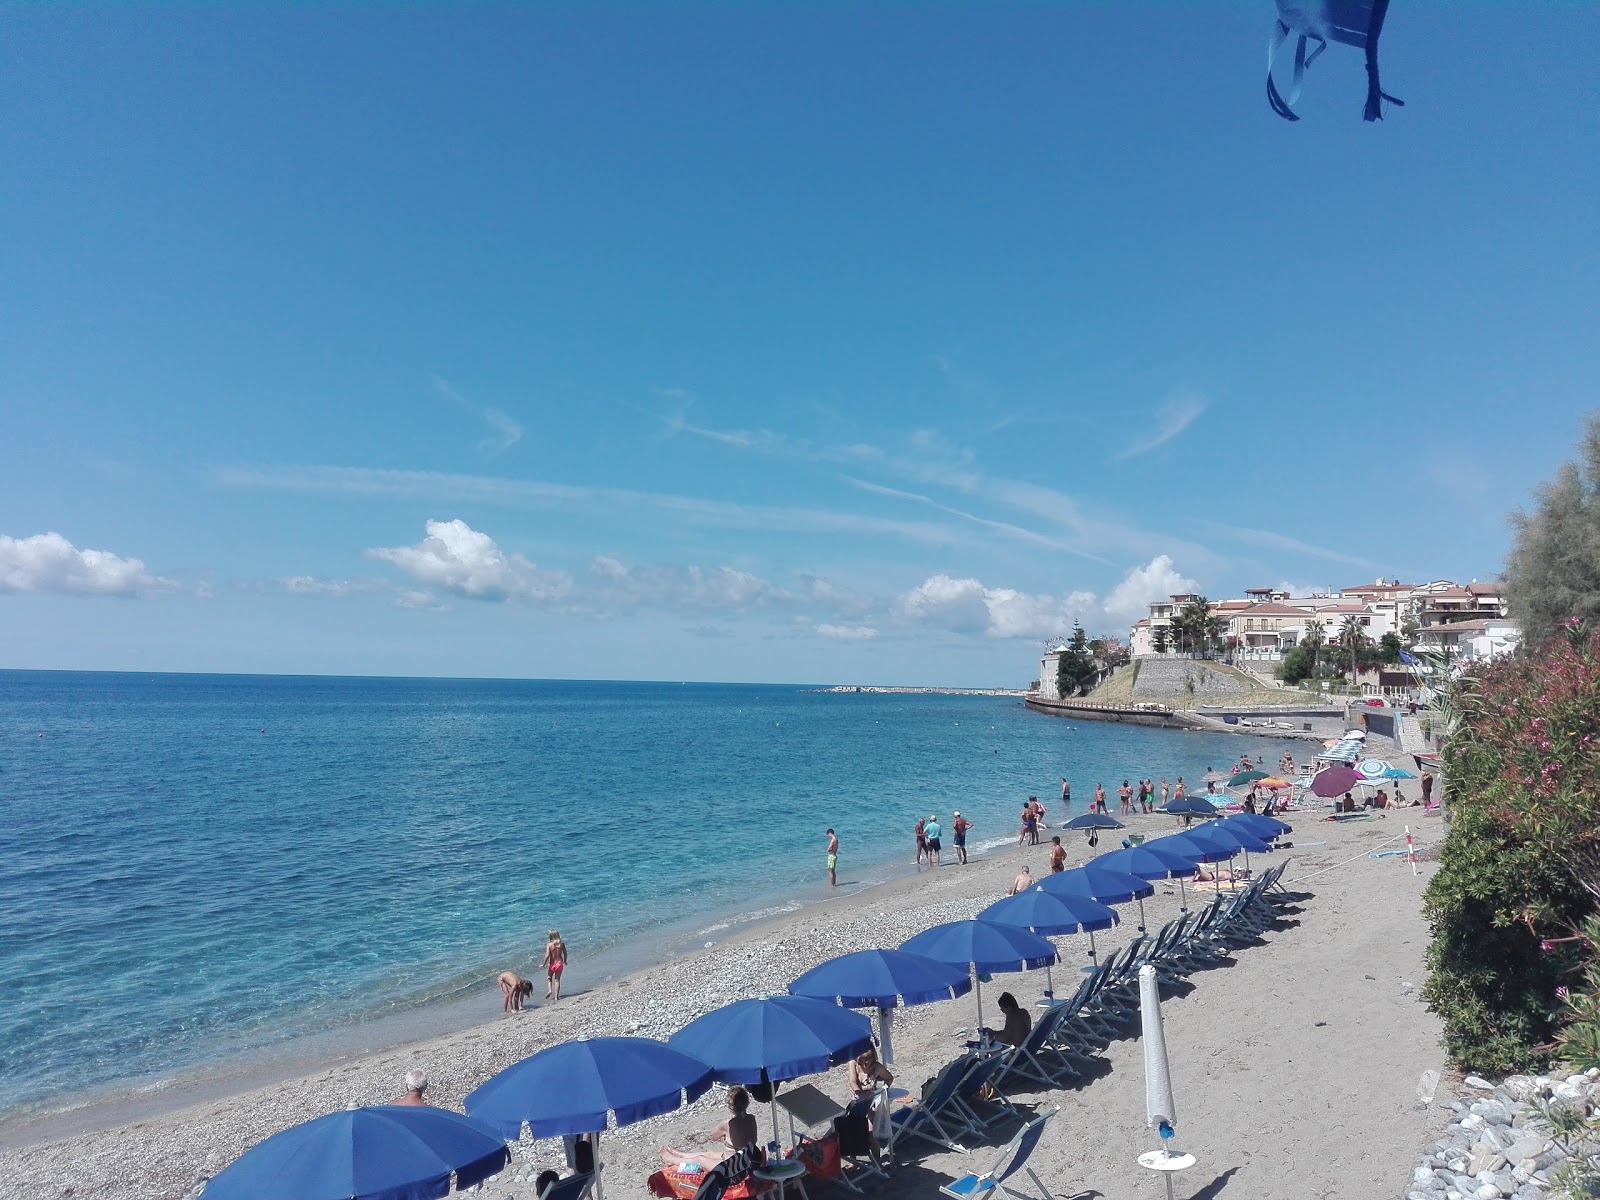 Spiaggia Diamante'in fotoğrafı geniş plaj ile birlikte